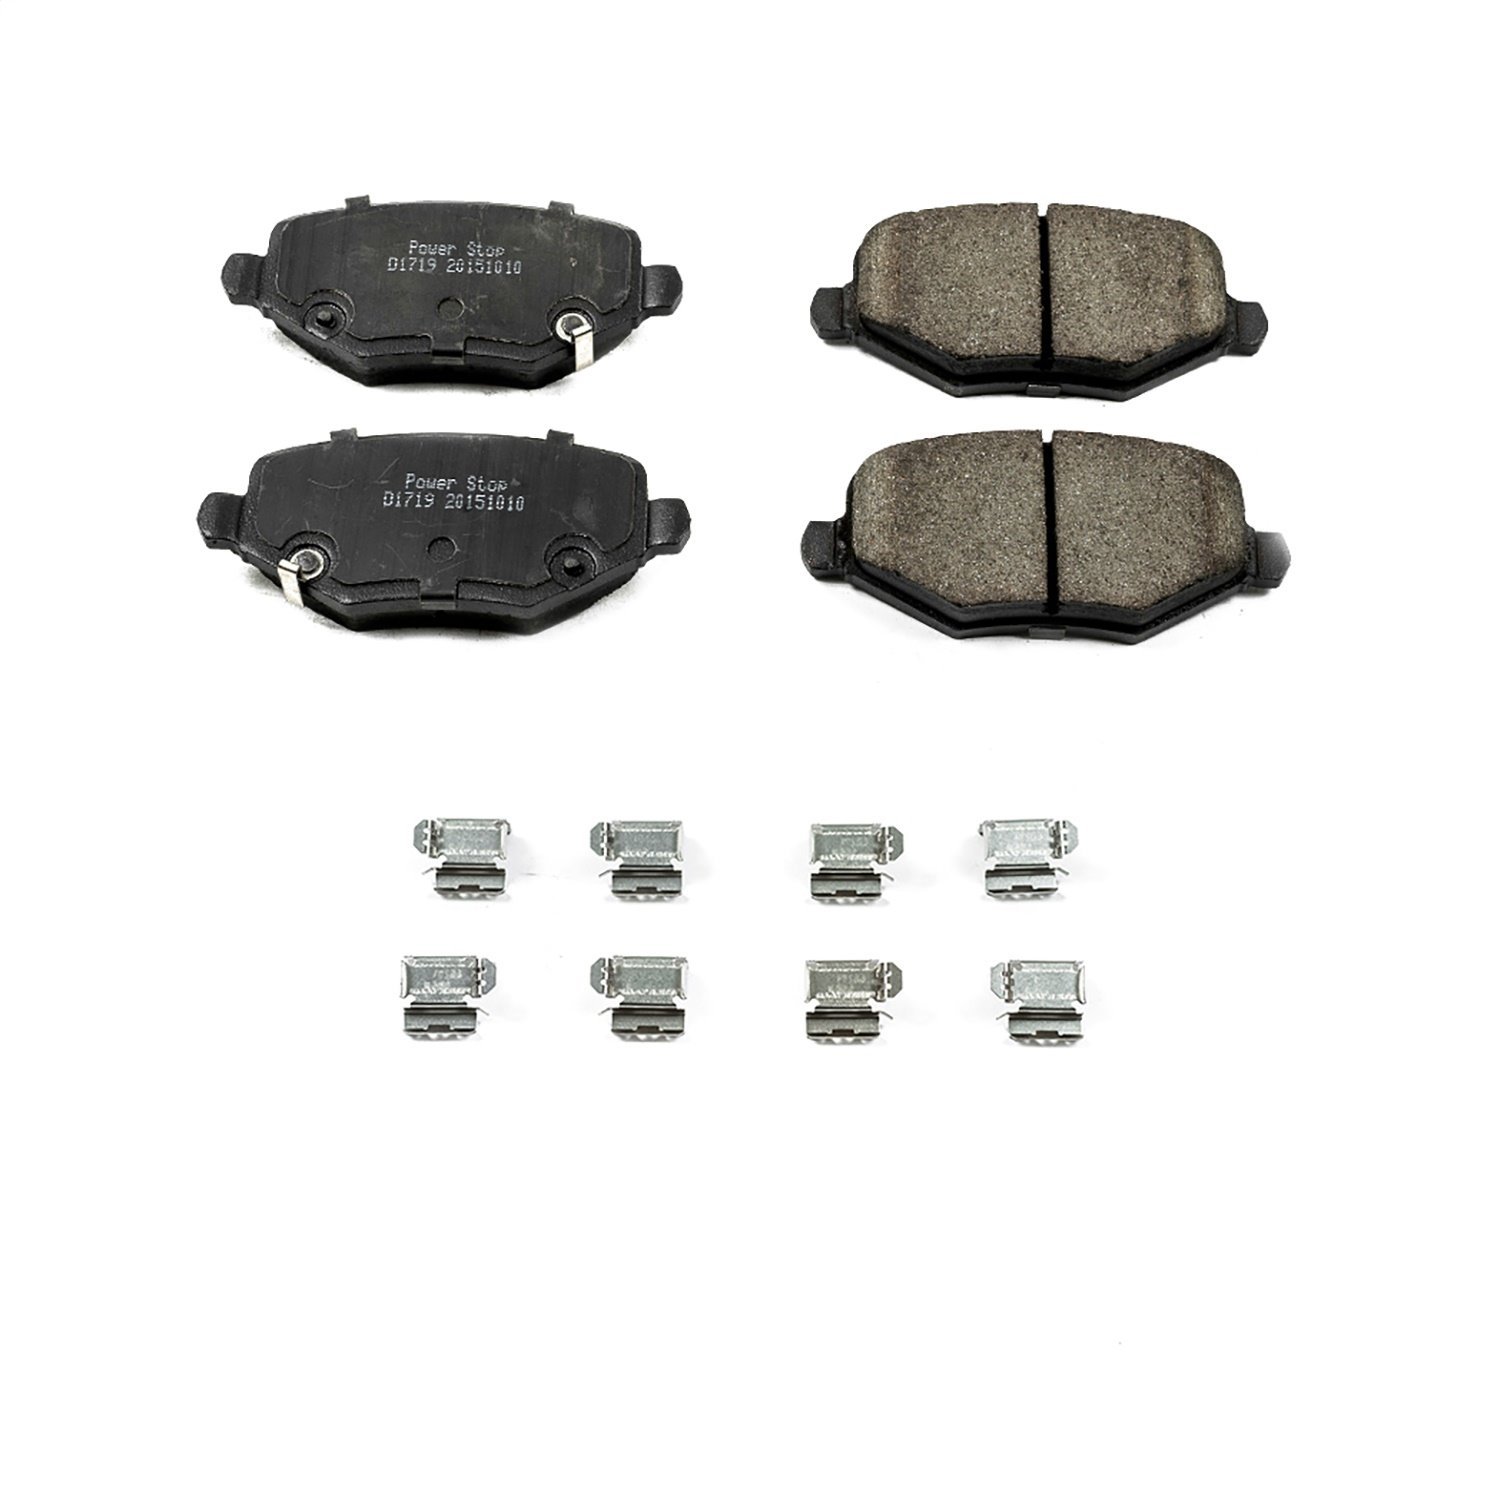 Z17 Evolution Ceramic Rear Brake Pads Fits Select